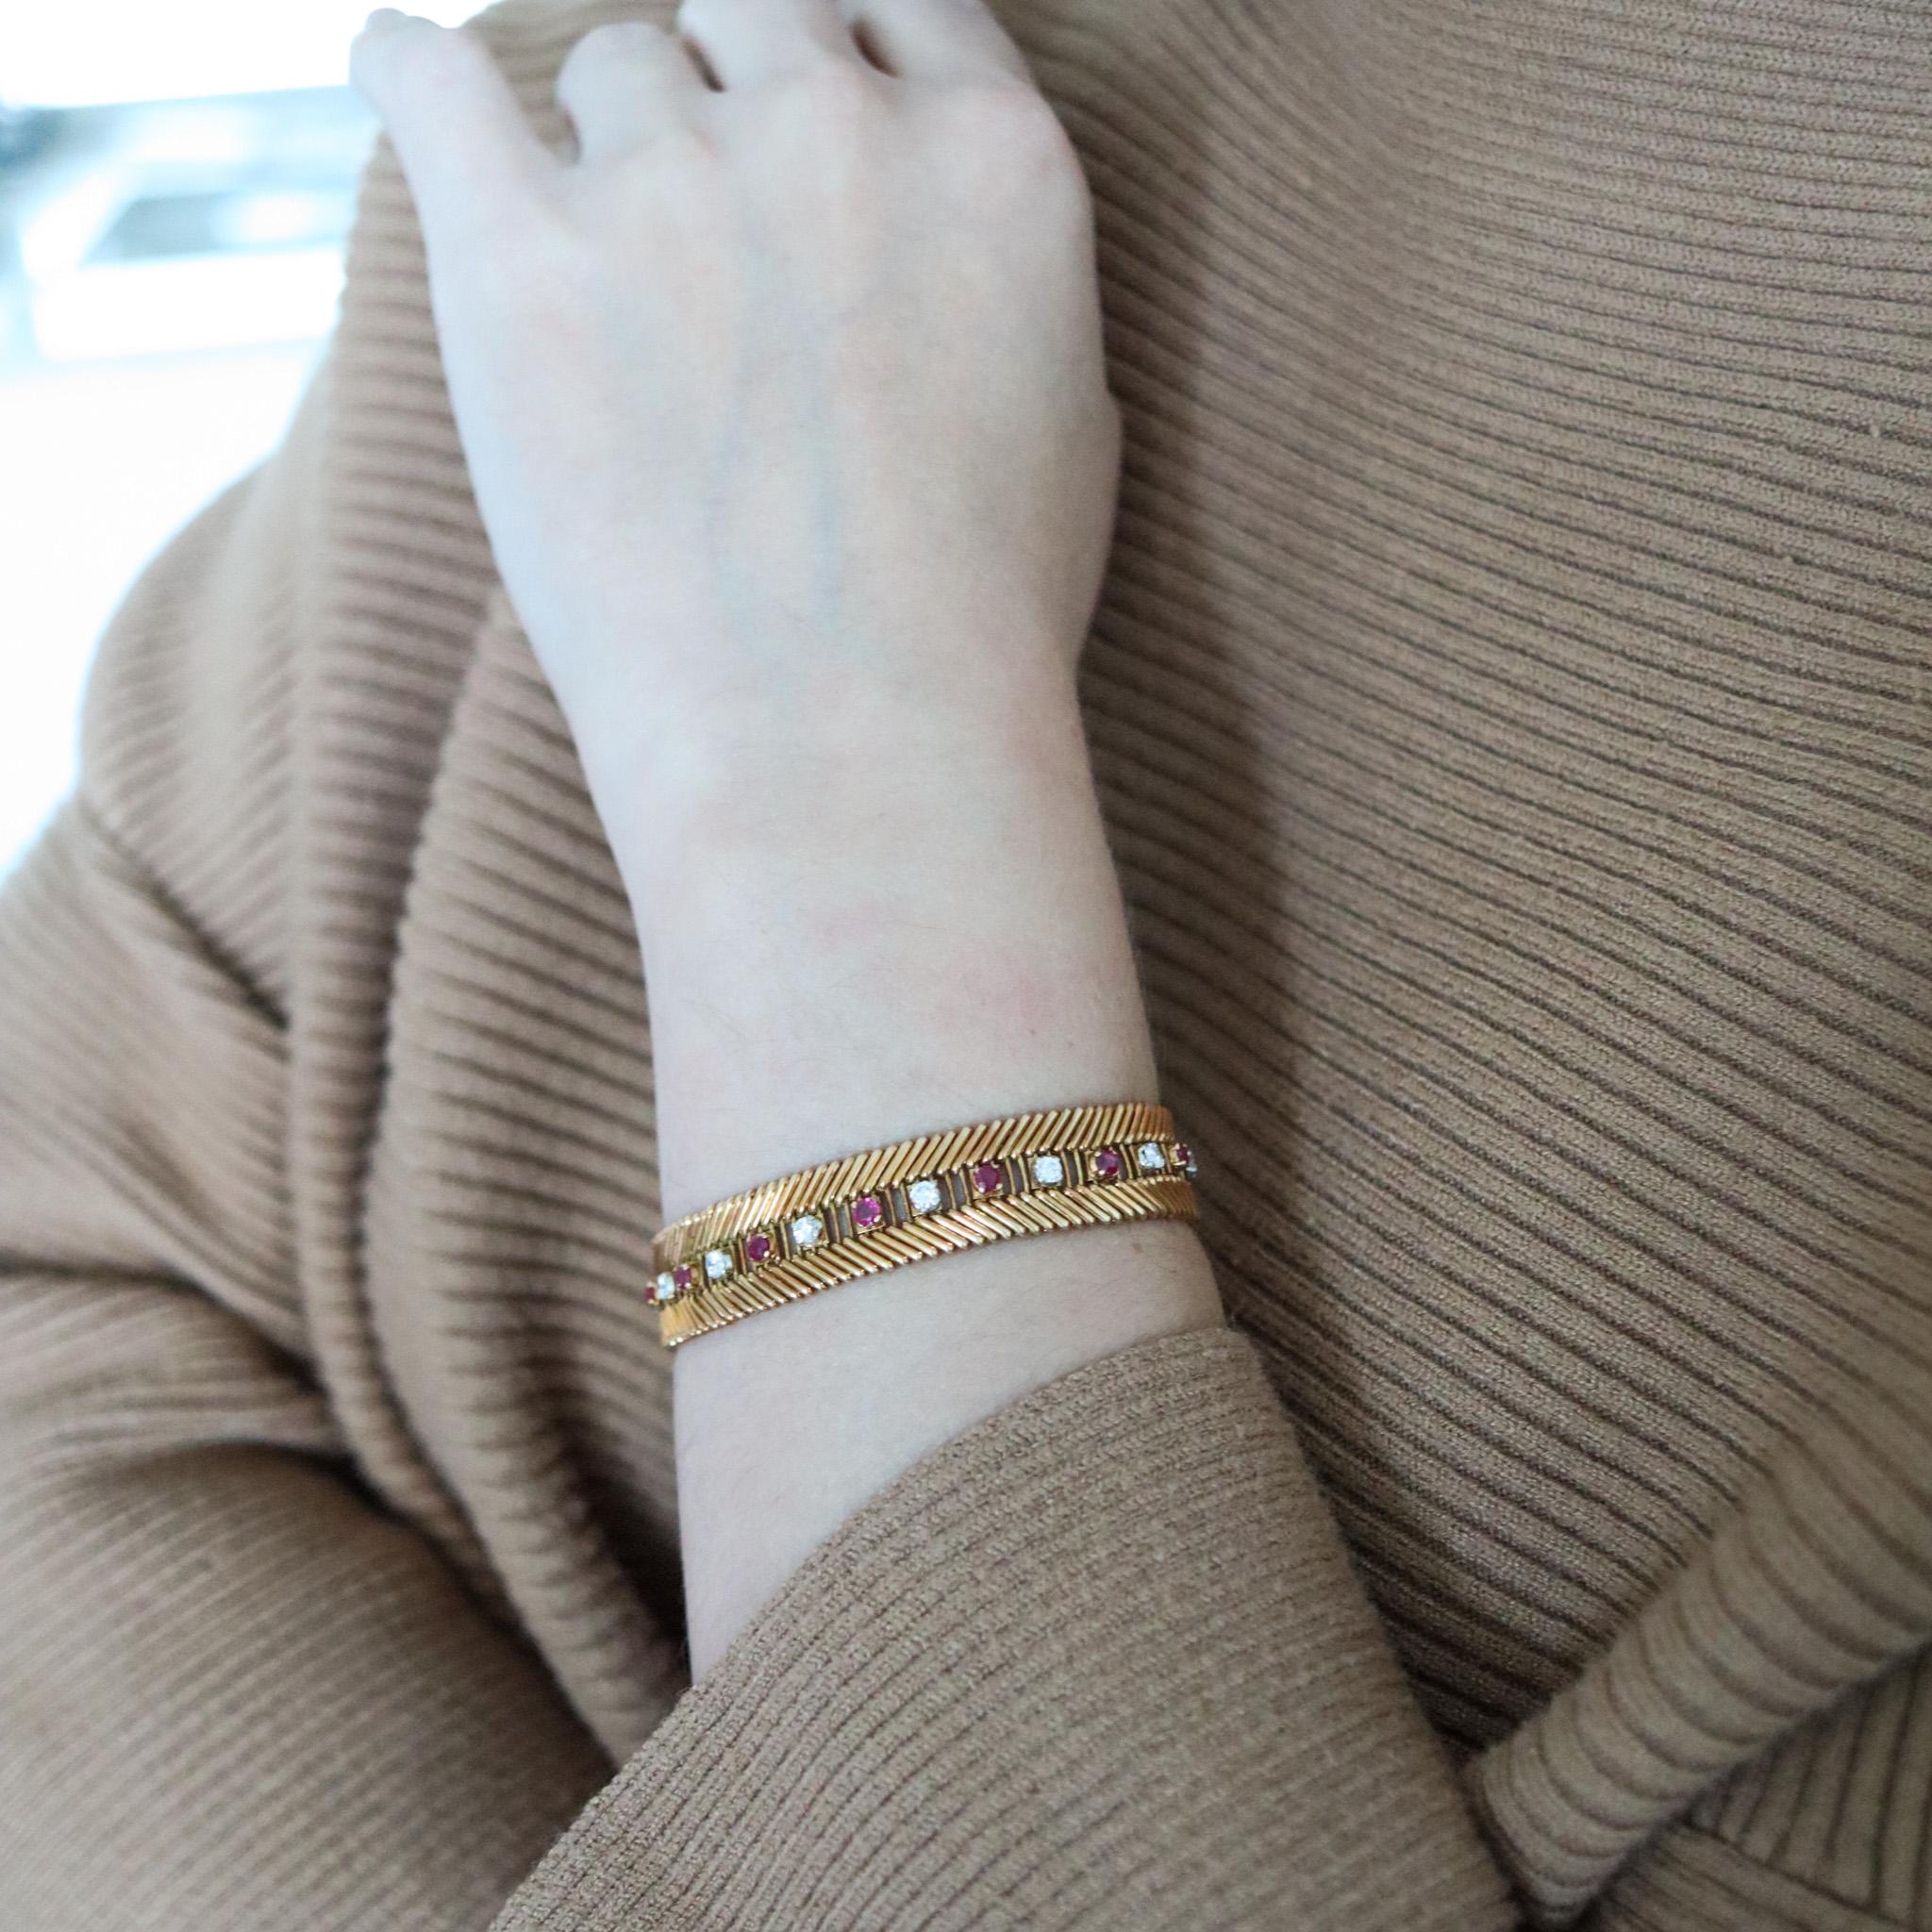 Flexibles Armband, entworfen von Bvlgari.

Ein außergewöhnliches Armband, das 1950 in Mailand von der Schmuckfirma Bvlgari entworfen wurde. Dieses Stück wurde sorgfältig mit einer wunderschönen Handwerkskunst in massivem Gelbgold von 18 Karat mit